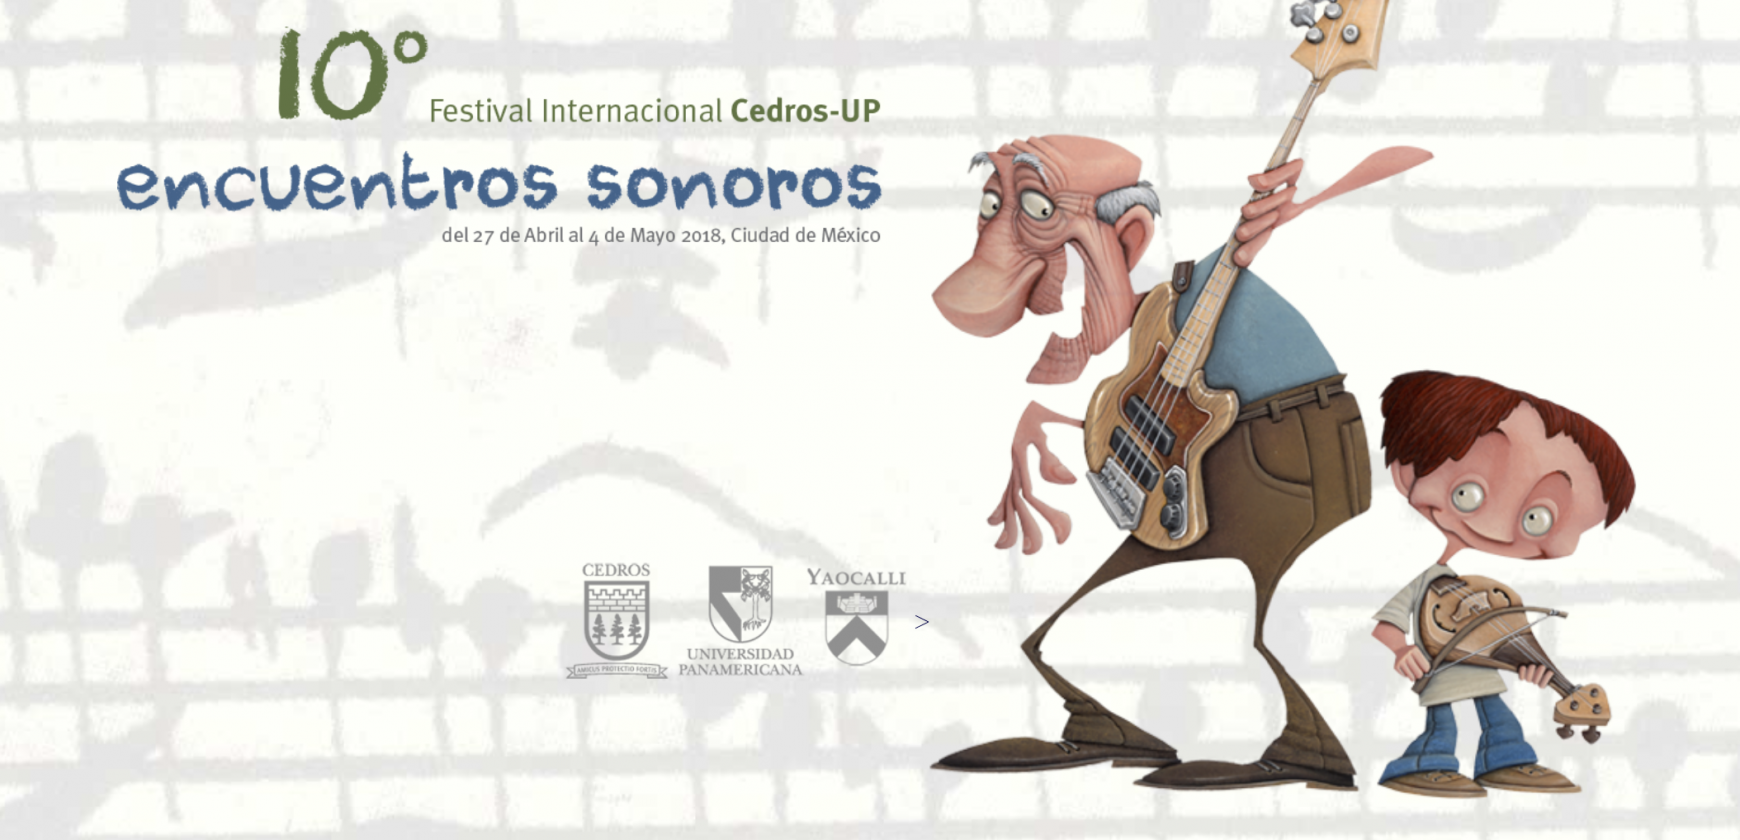 Festival Internacional Cedros-UP